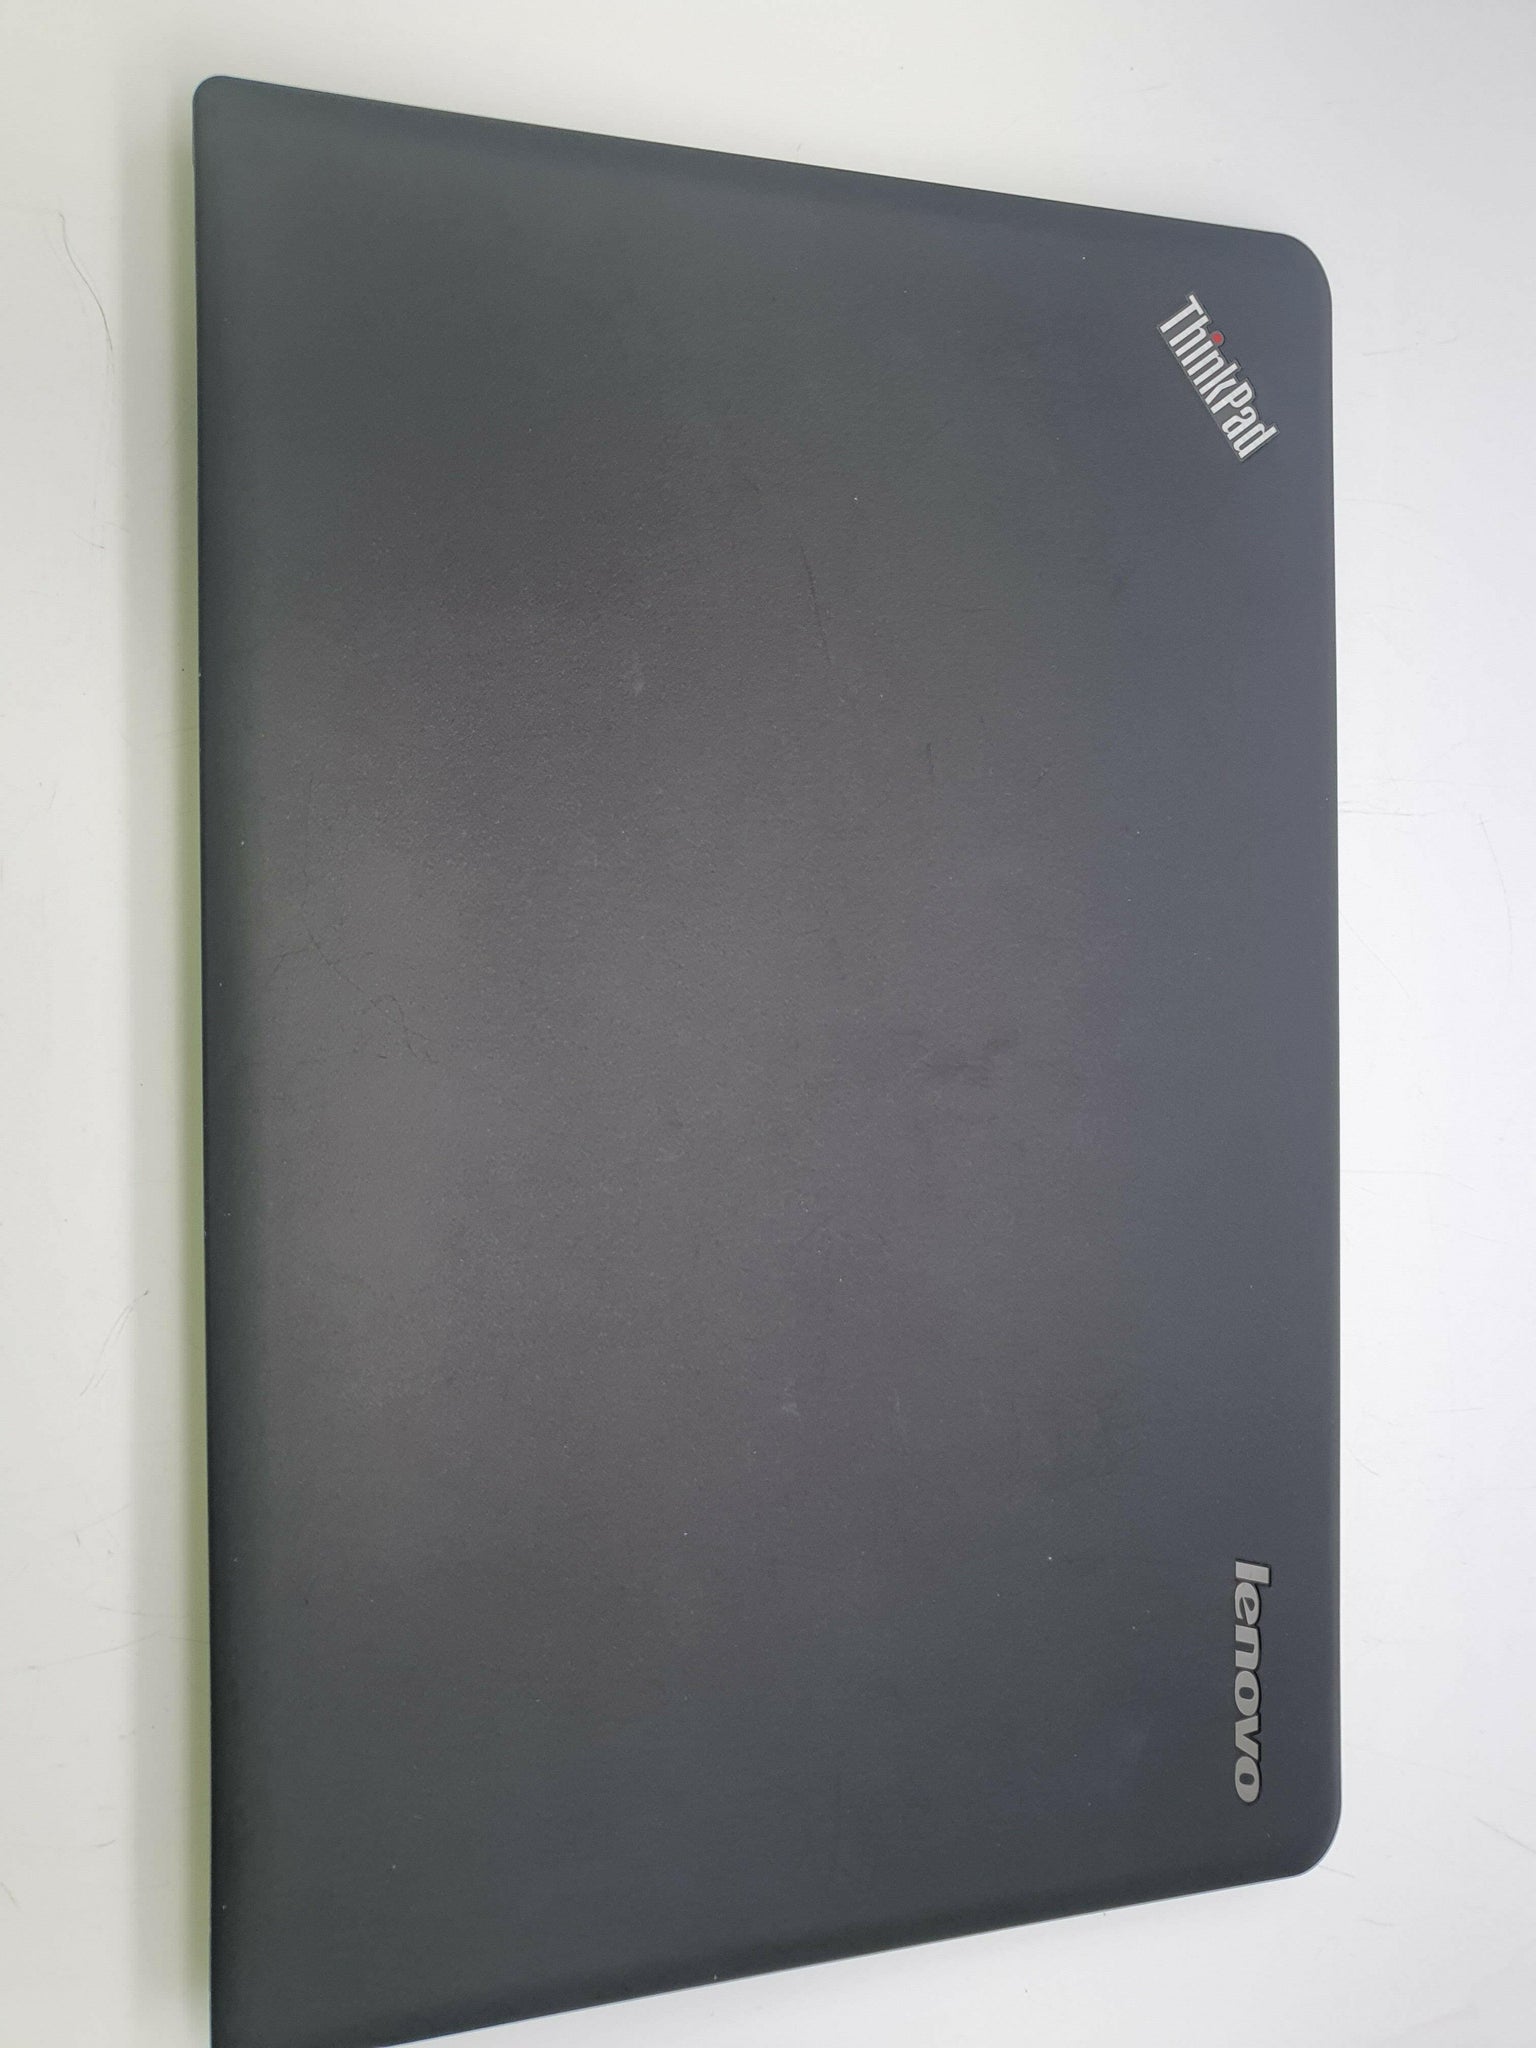 Lenovo Thinkpad E540 - i5 - 8GB